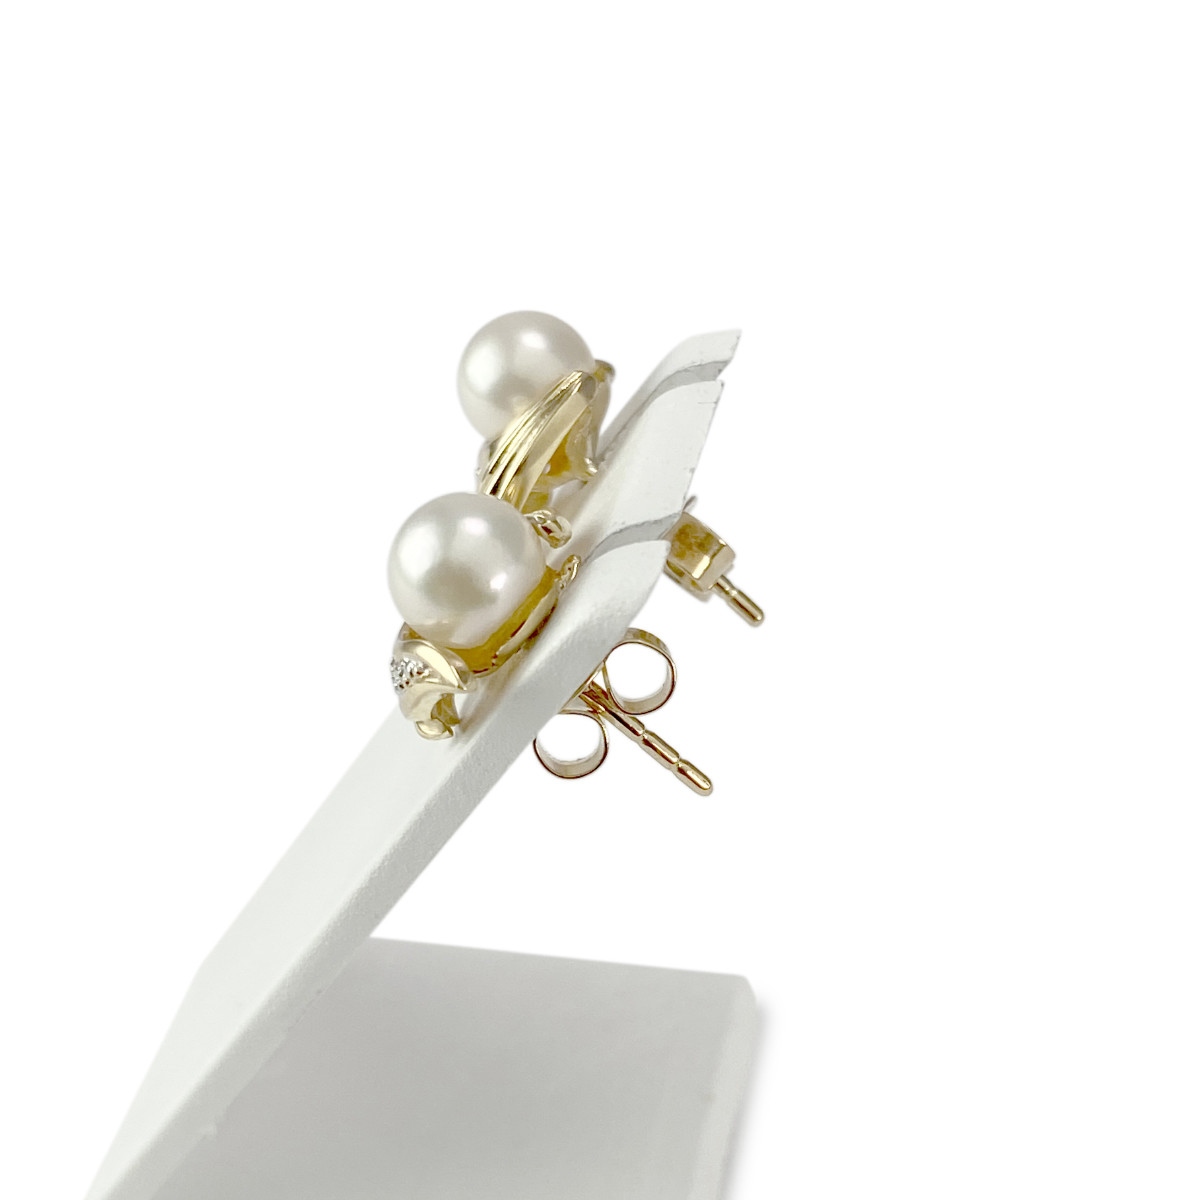 Boucles d'oreilles d'occasion or 750 jaune et rhodié diamants perles de culture - vue 2